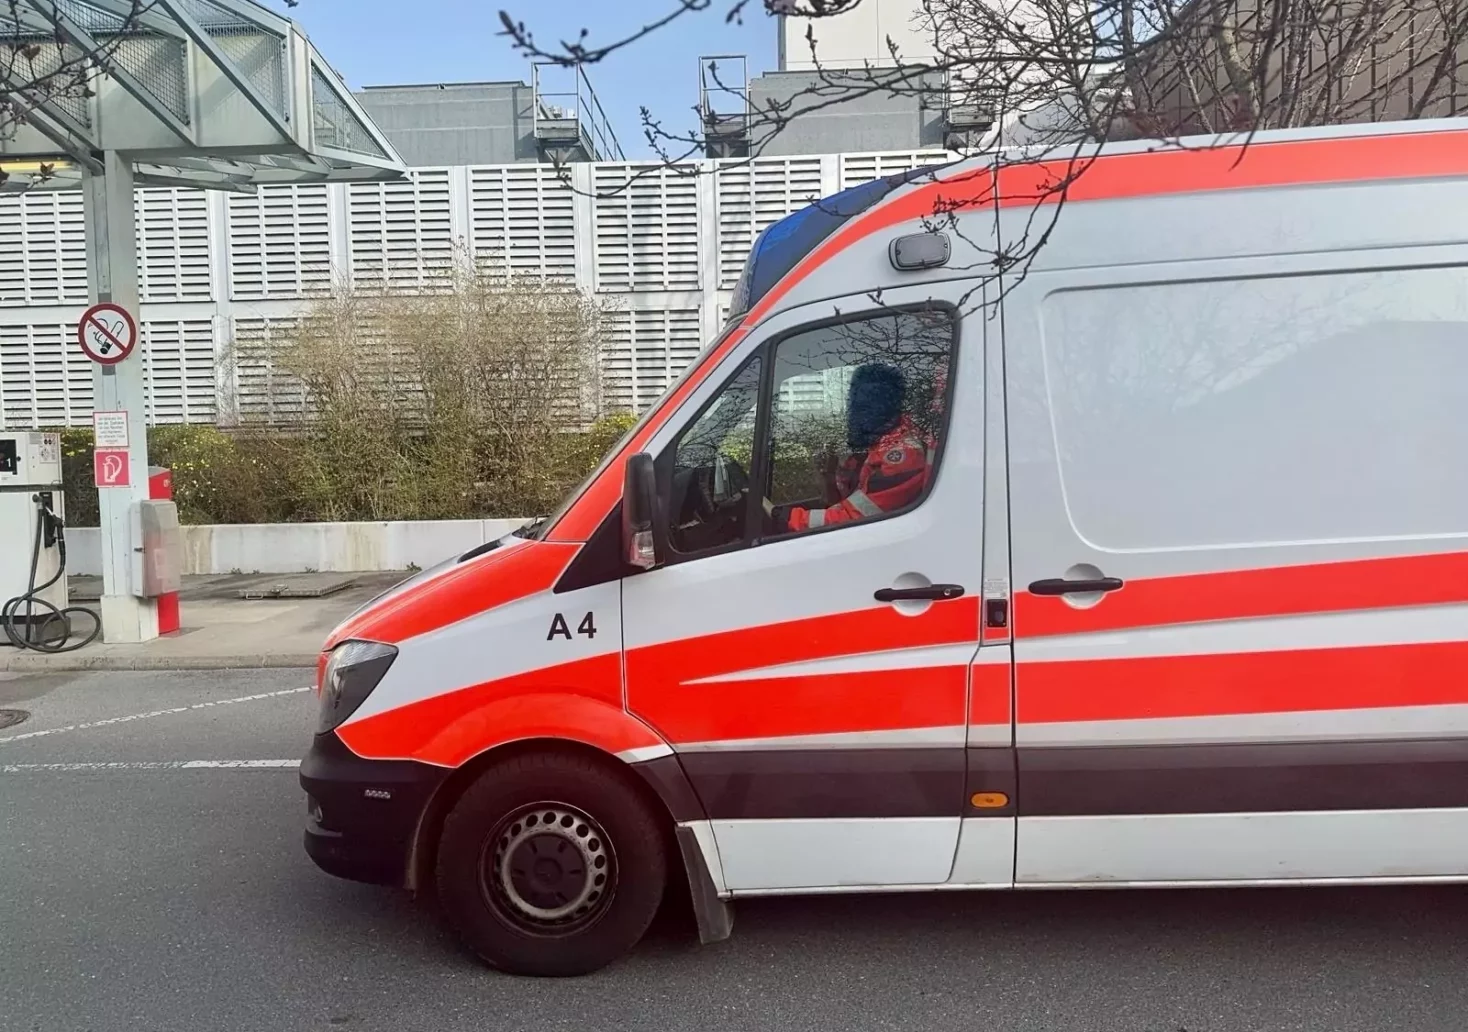 Bild auf 5min.at zeigt ein Rettungsauto in Wien